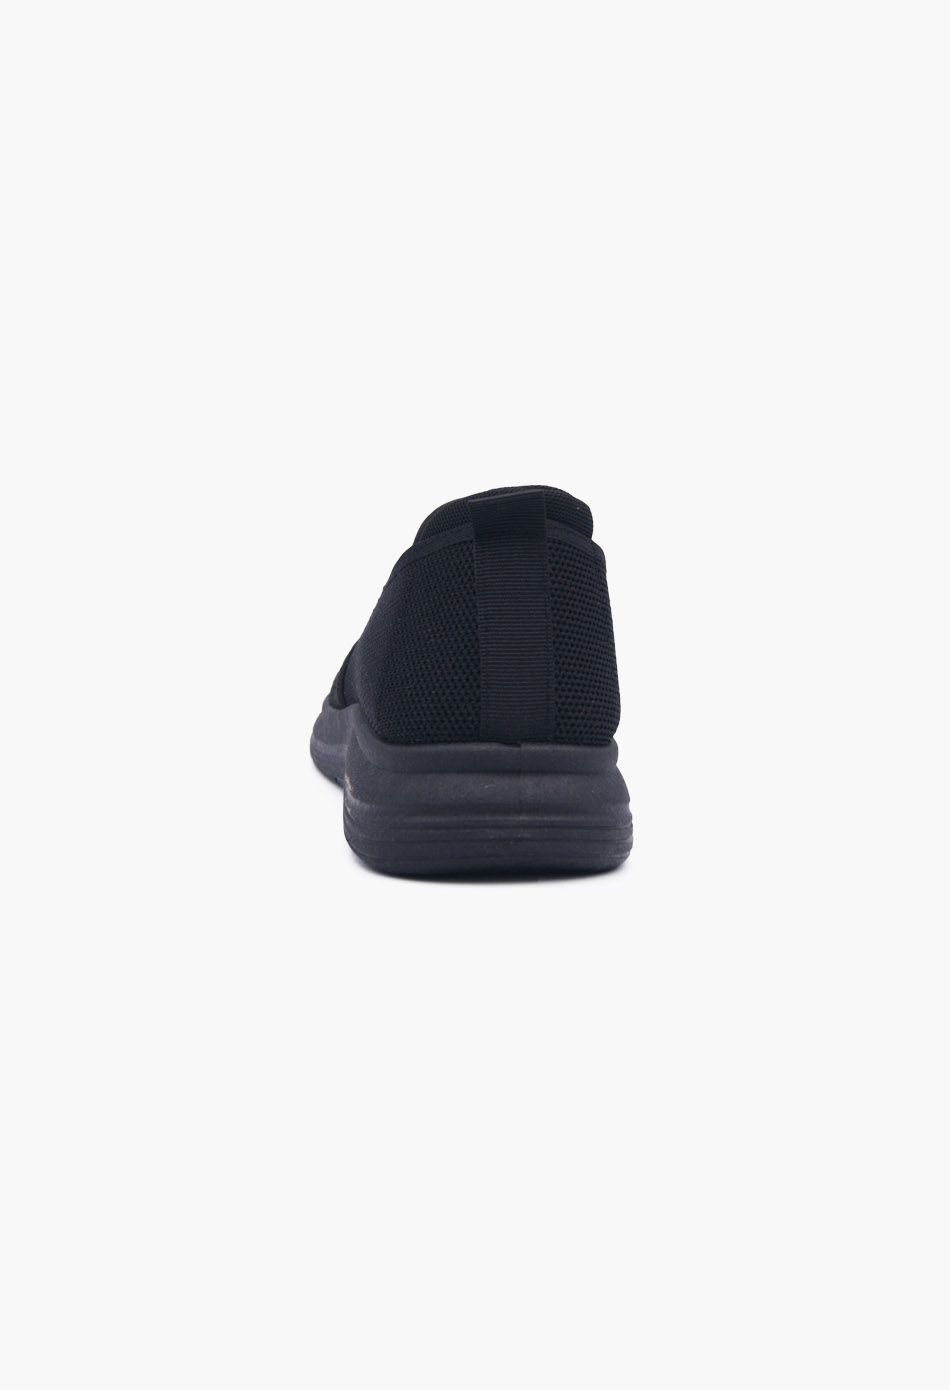 Ανδρικά Μοκασίνια τύπου κάλτσα Μαύρο / 01-9-black ΑΘΛΗΤΙΚΑ & SNEAKERS joya.gr